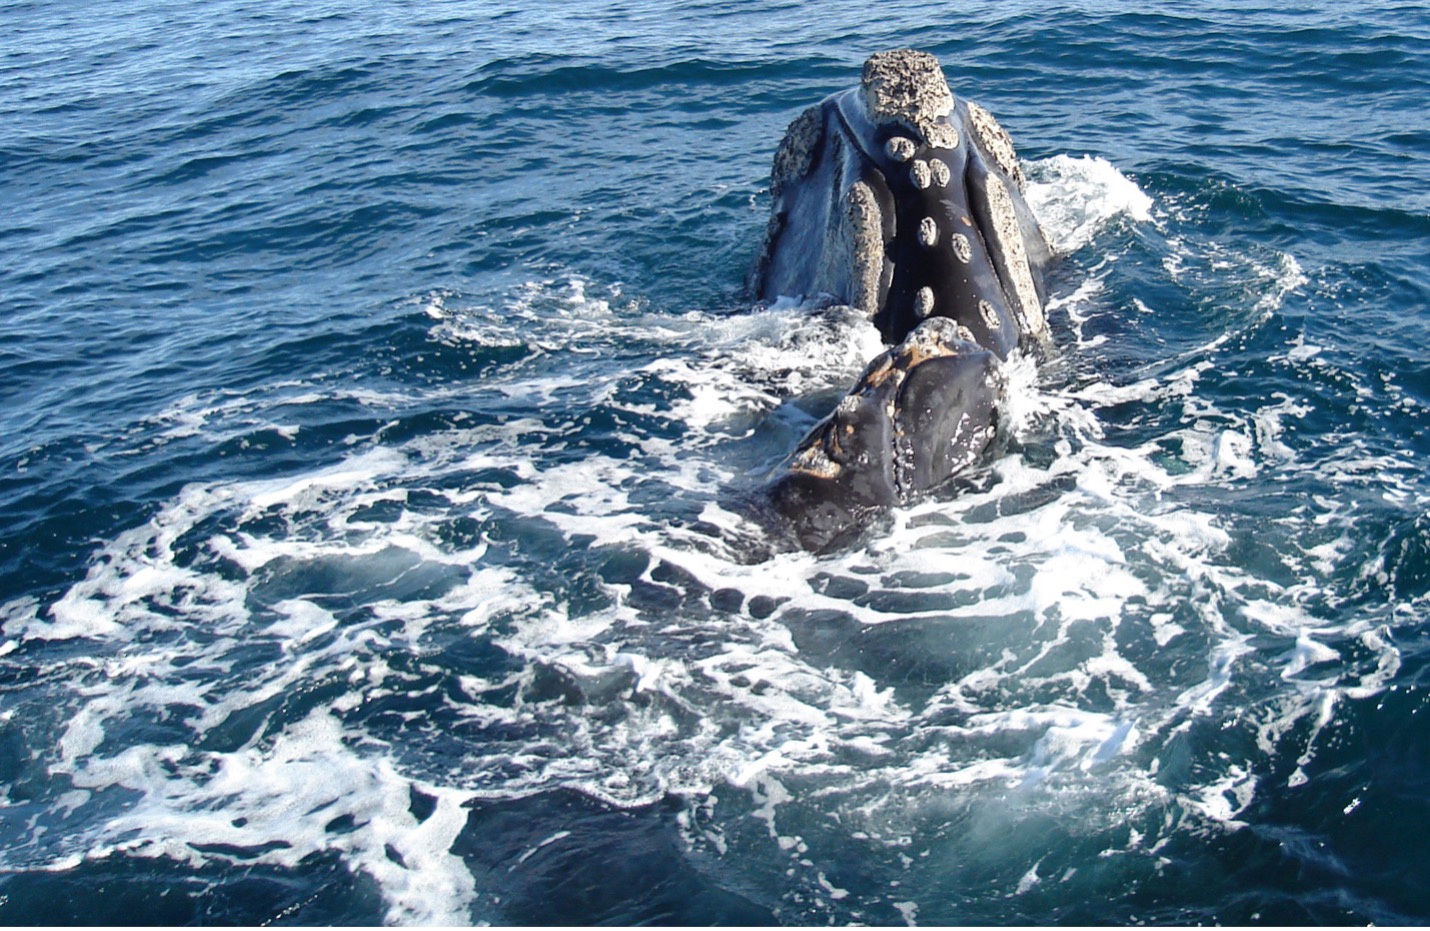 Las ballenas francas de Chile y Perú son remanentes de una población única y muy diezmada, que necesita urgentemente de la implementación de medidas de protección efectivas para evitar su extinción. Foto: C. Poduje/Centro de Conservación Cetacea